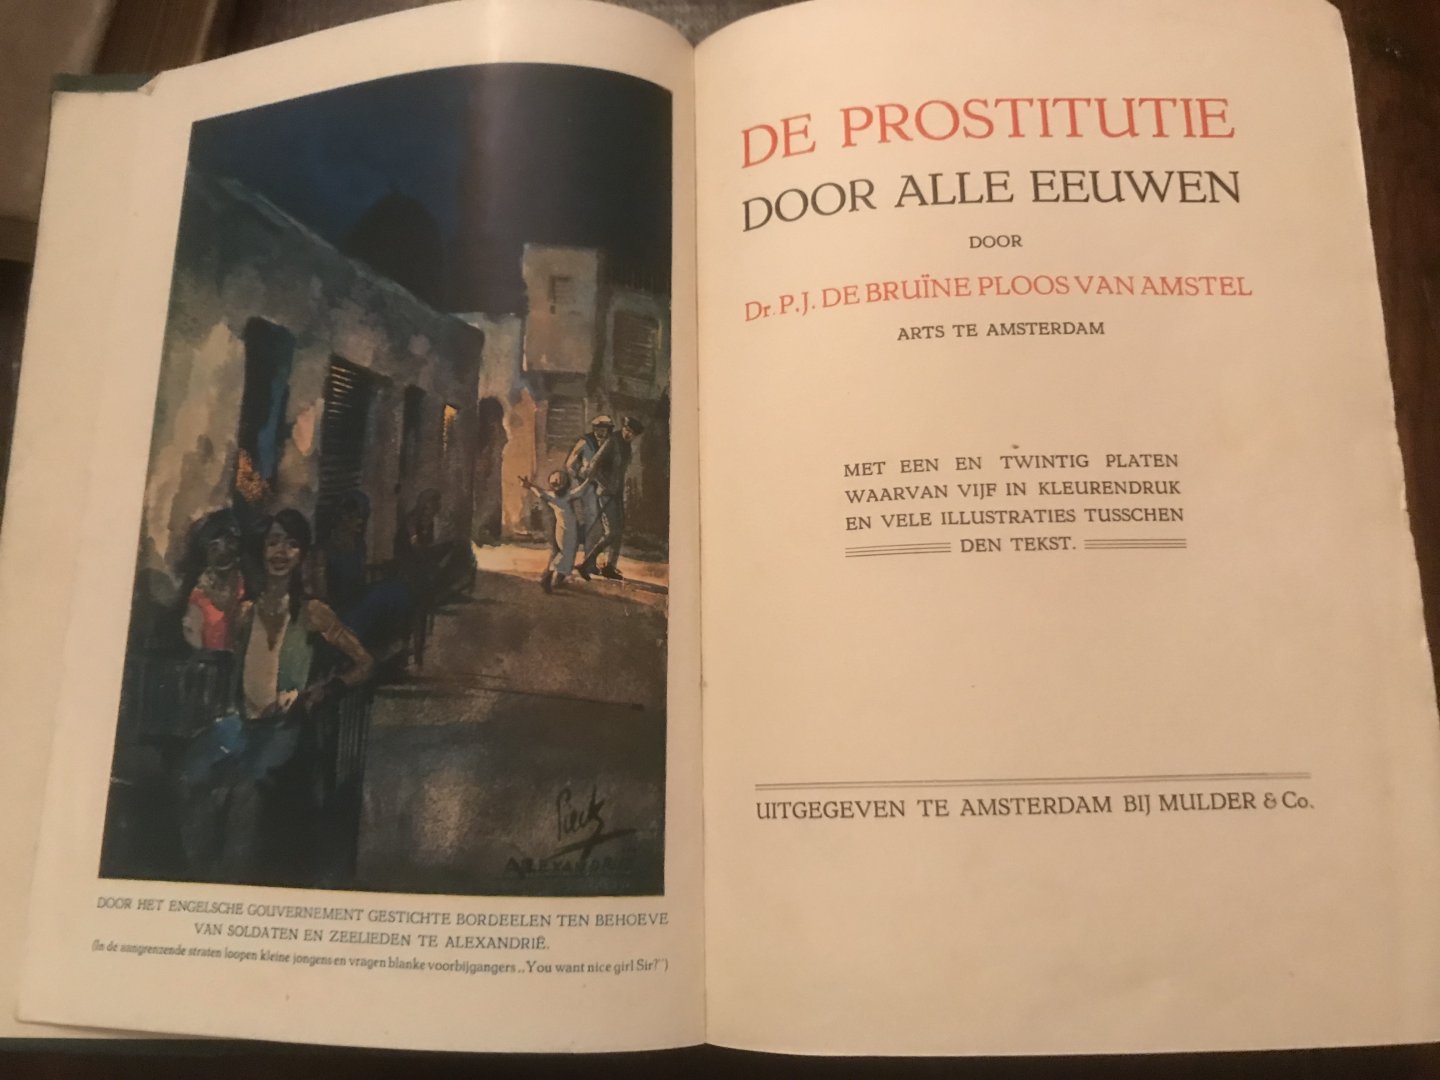 De Bruine Ploos van Amstel, P.J. - de prostitutie door alle eeuwen